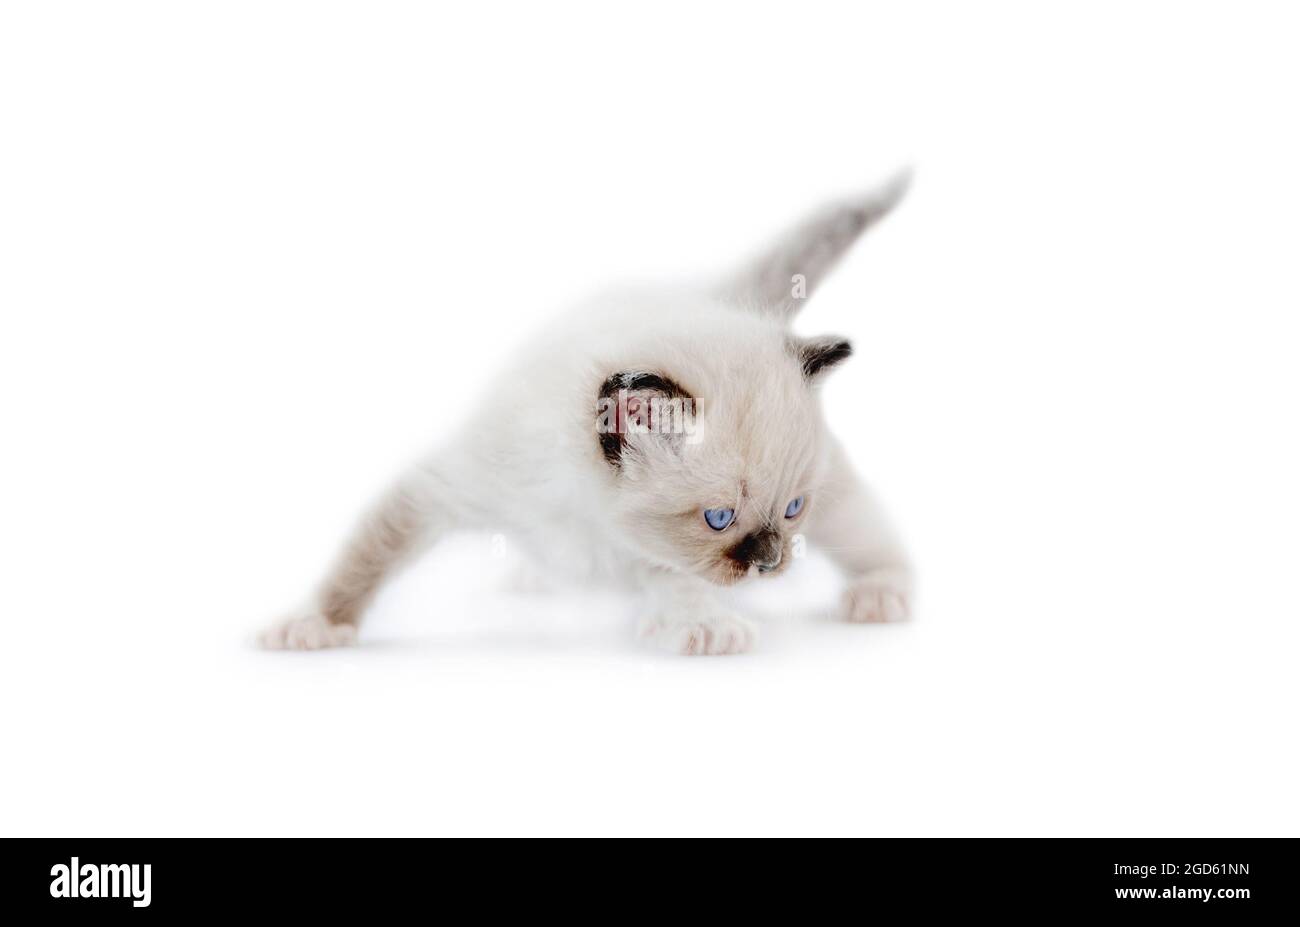 Liebenswert Ragdoll Kätzchen isoliert auf weißem Hintergrund mit Copyspace. Flauschige reinrassige Kätzin, die mit dem Schwanz nach oben steht Stockfoto